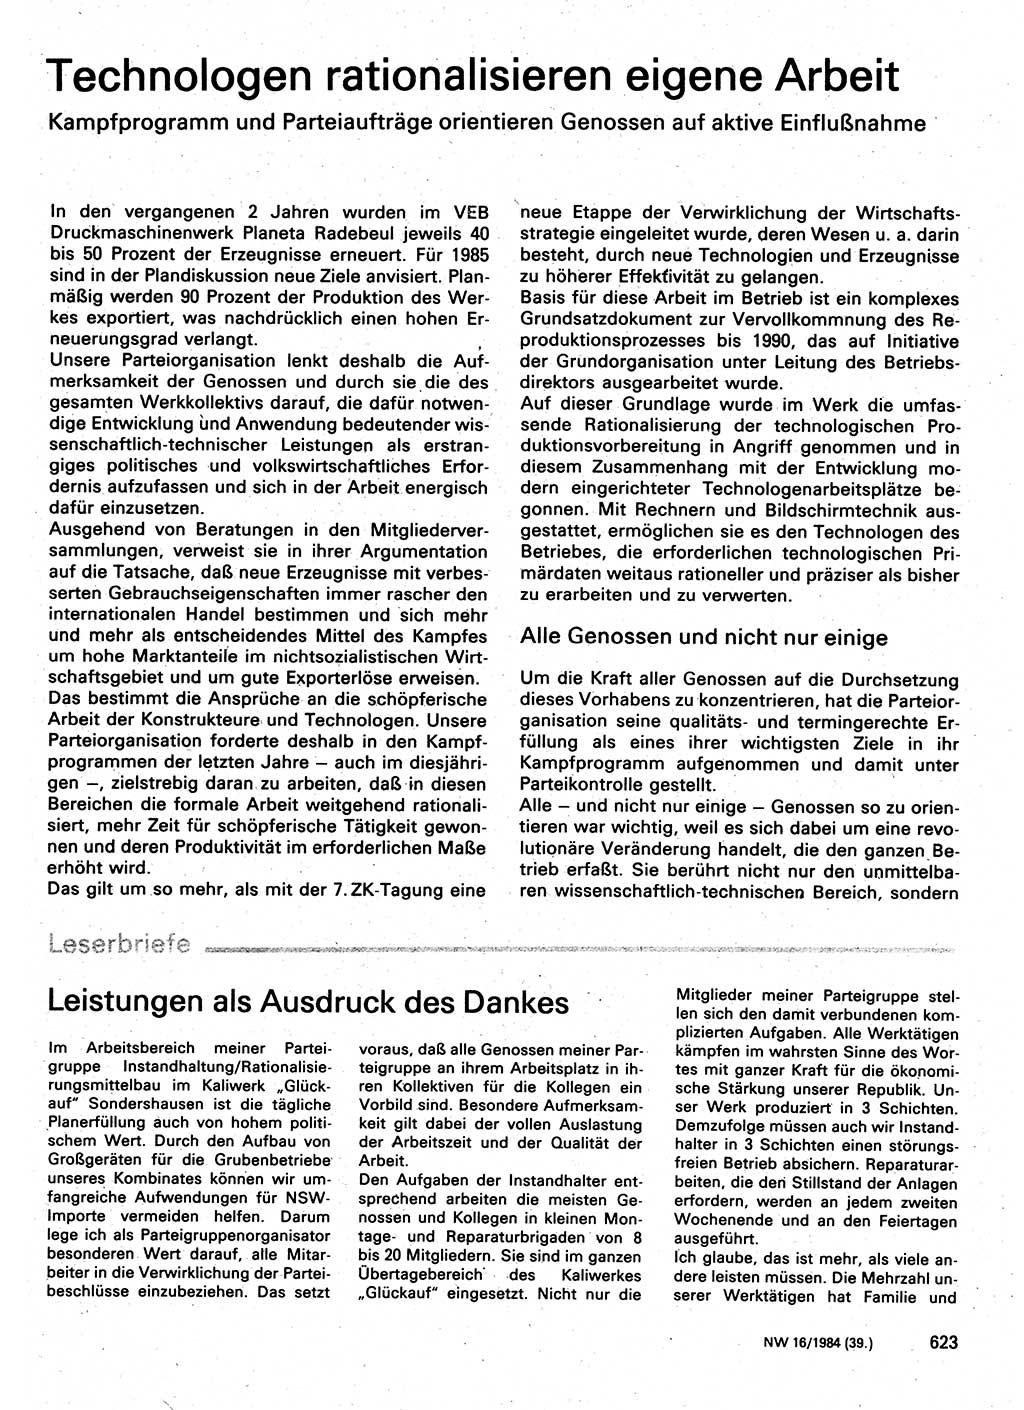 Neuer Weg (NW), Organ des Zentralkomitees (ZK) der SED (Sozialistische Einheitspartei Deutschlands) für Fragen des Parteilebens, 39. Jahrgang [Deutsche Demokratische Republik (DDR)] 1984, Seite 623 (NW ZK SED DDR 1984, S. 623)